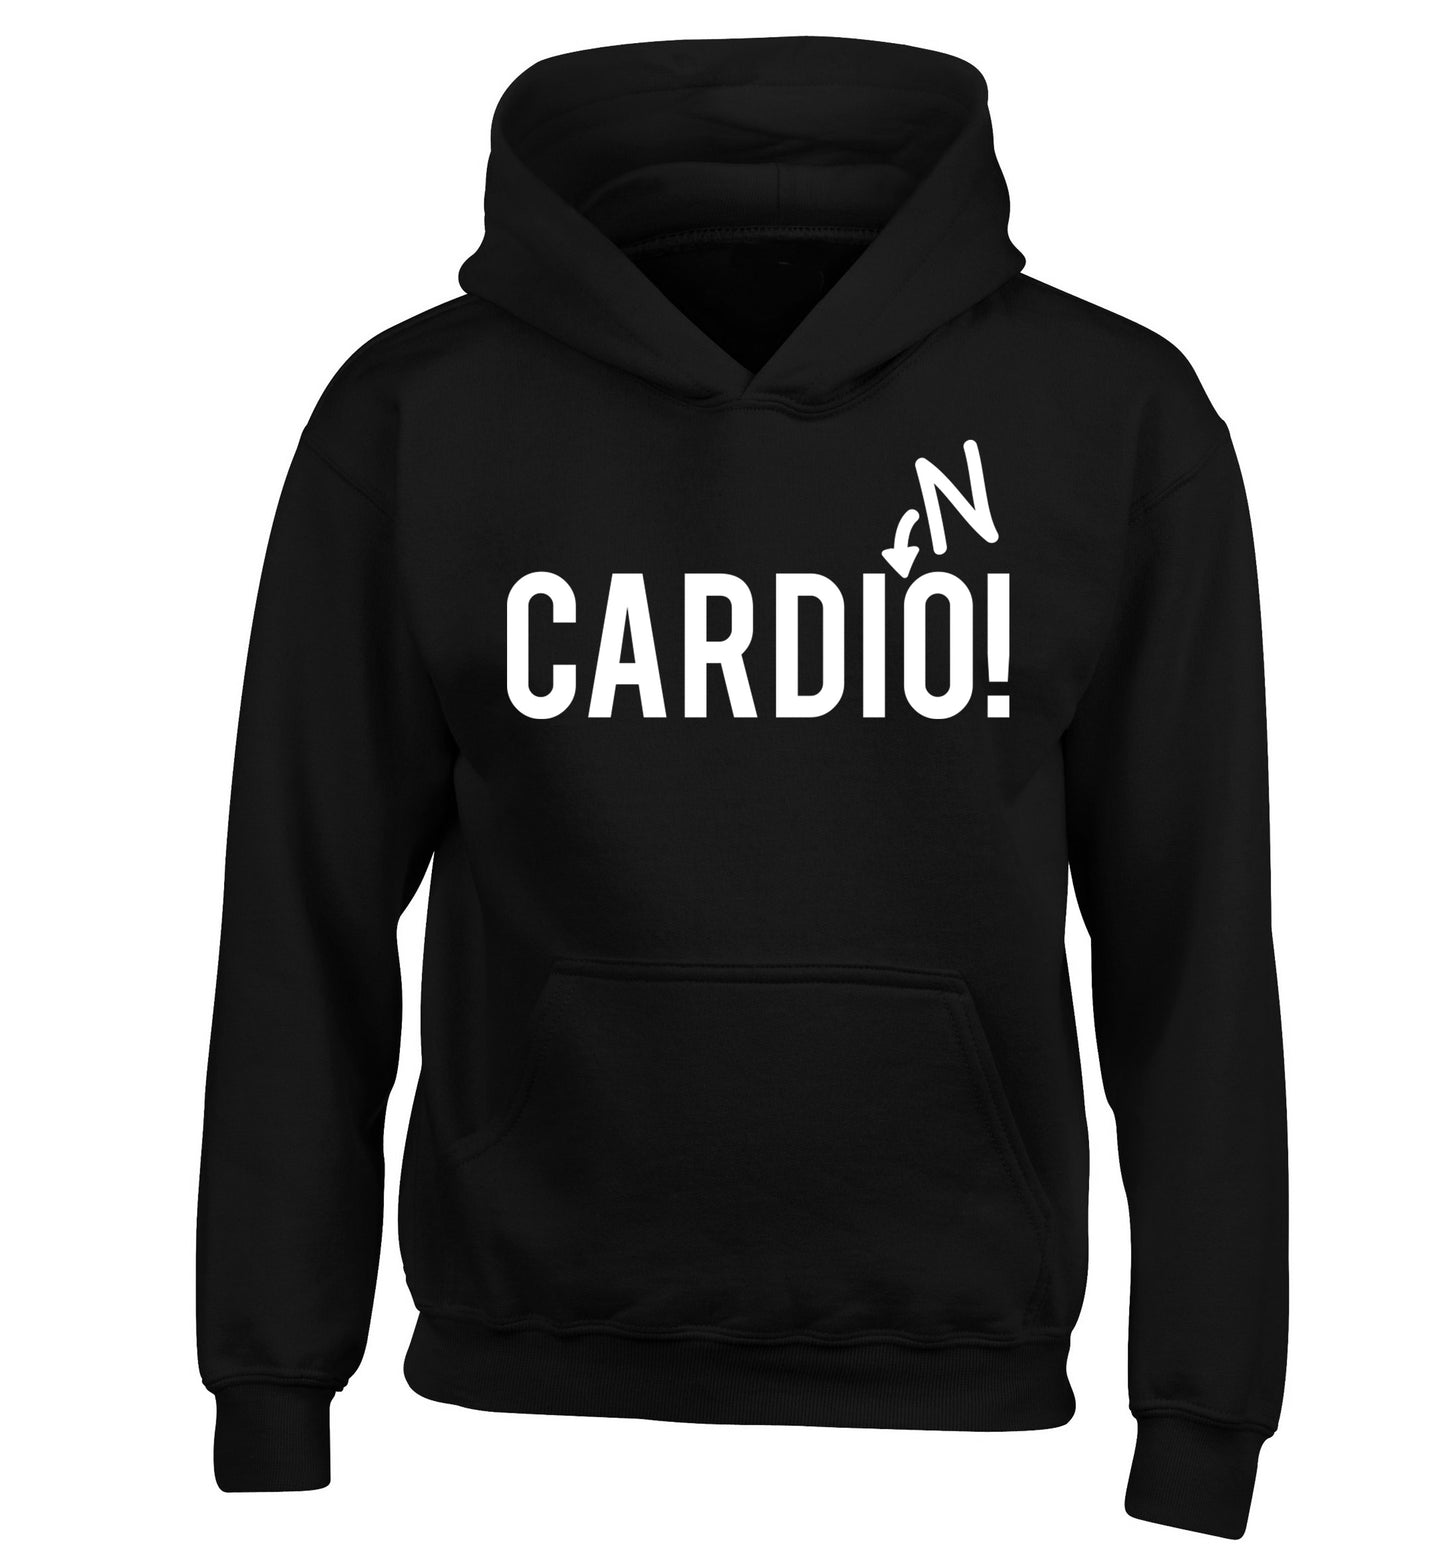 Cardino children's black hoodie 12-14 Years